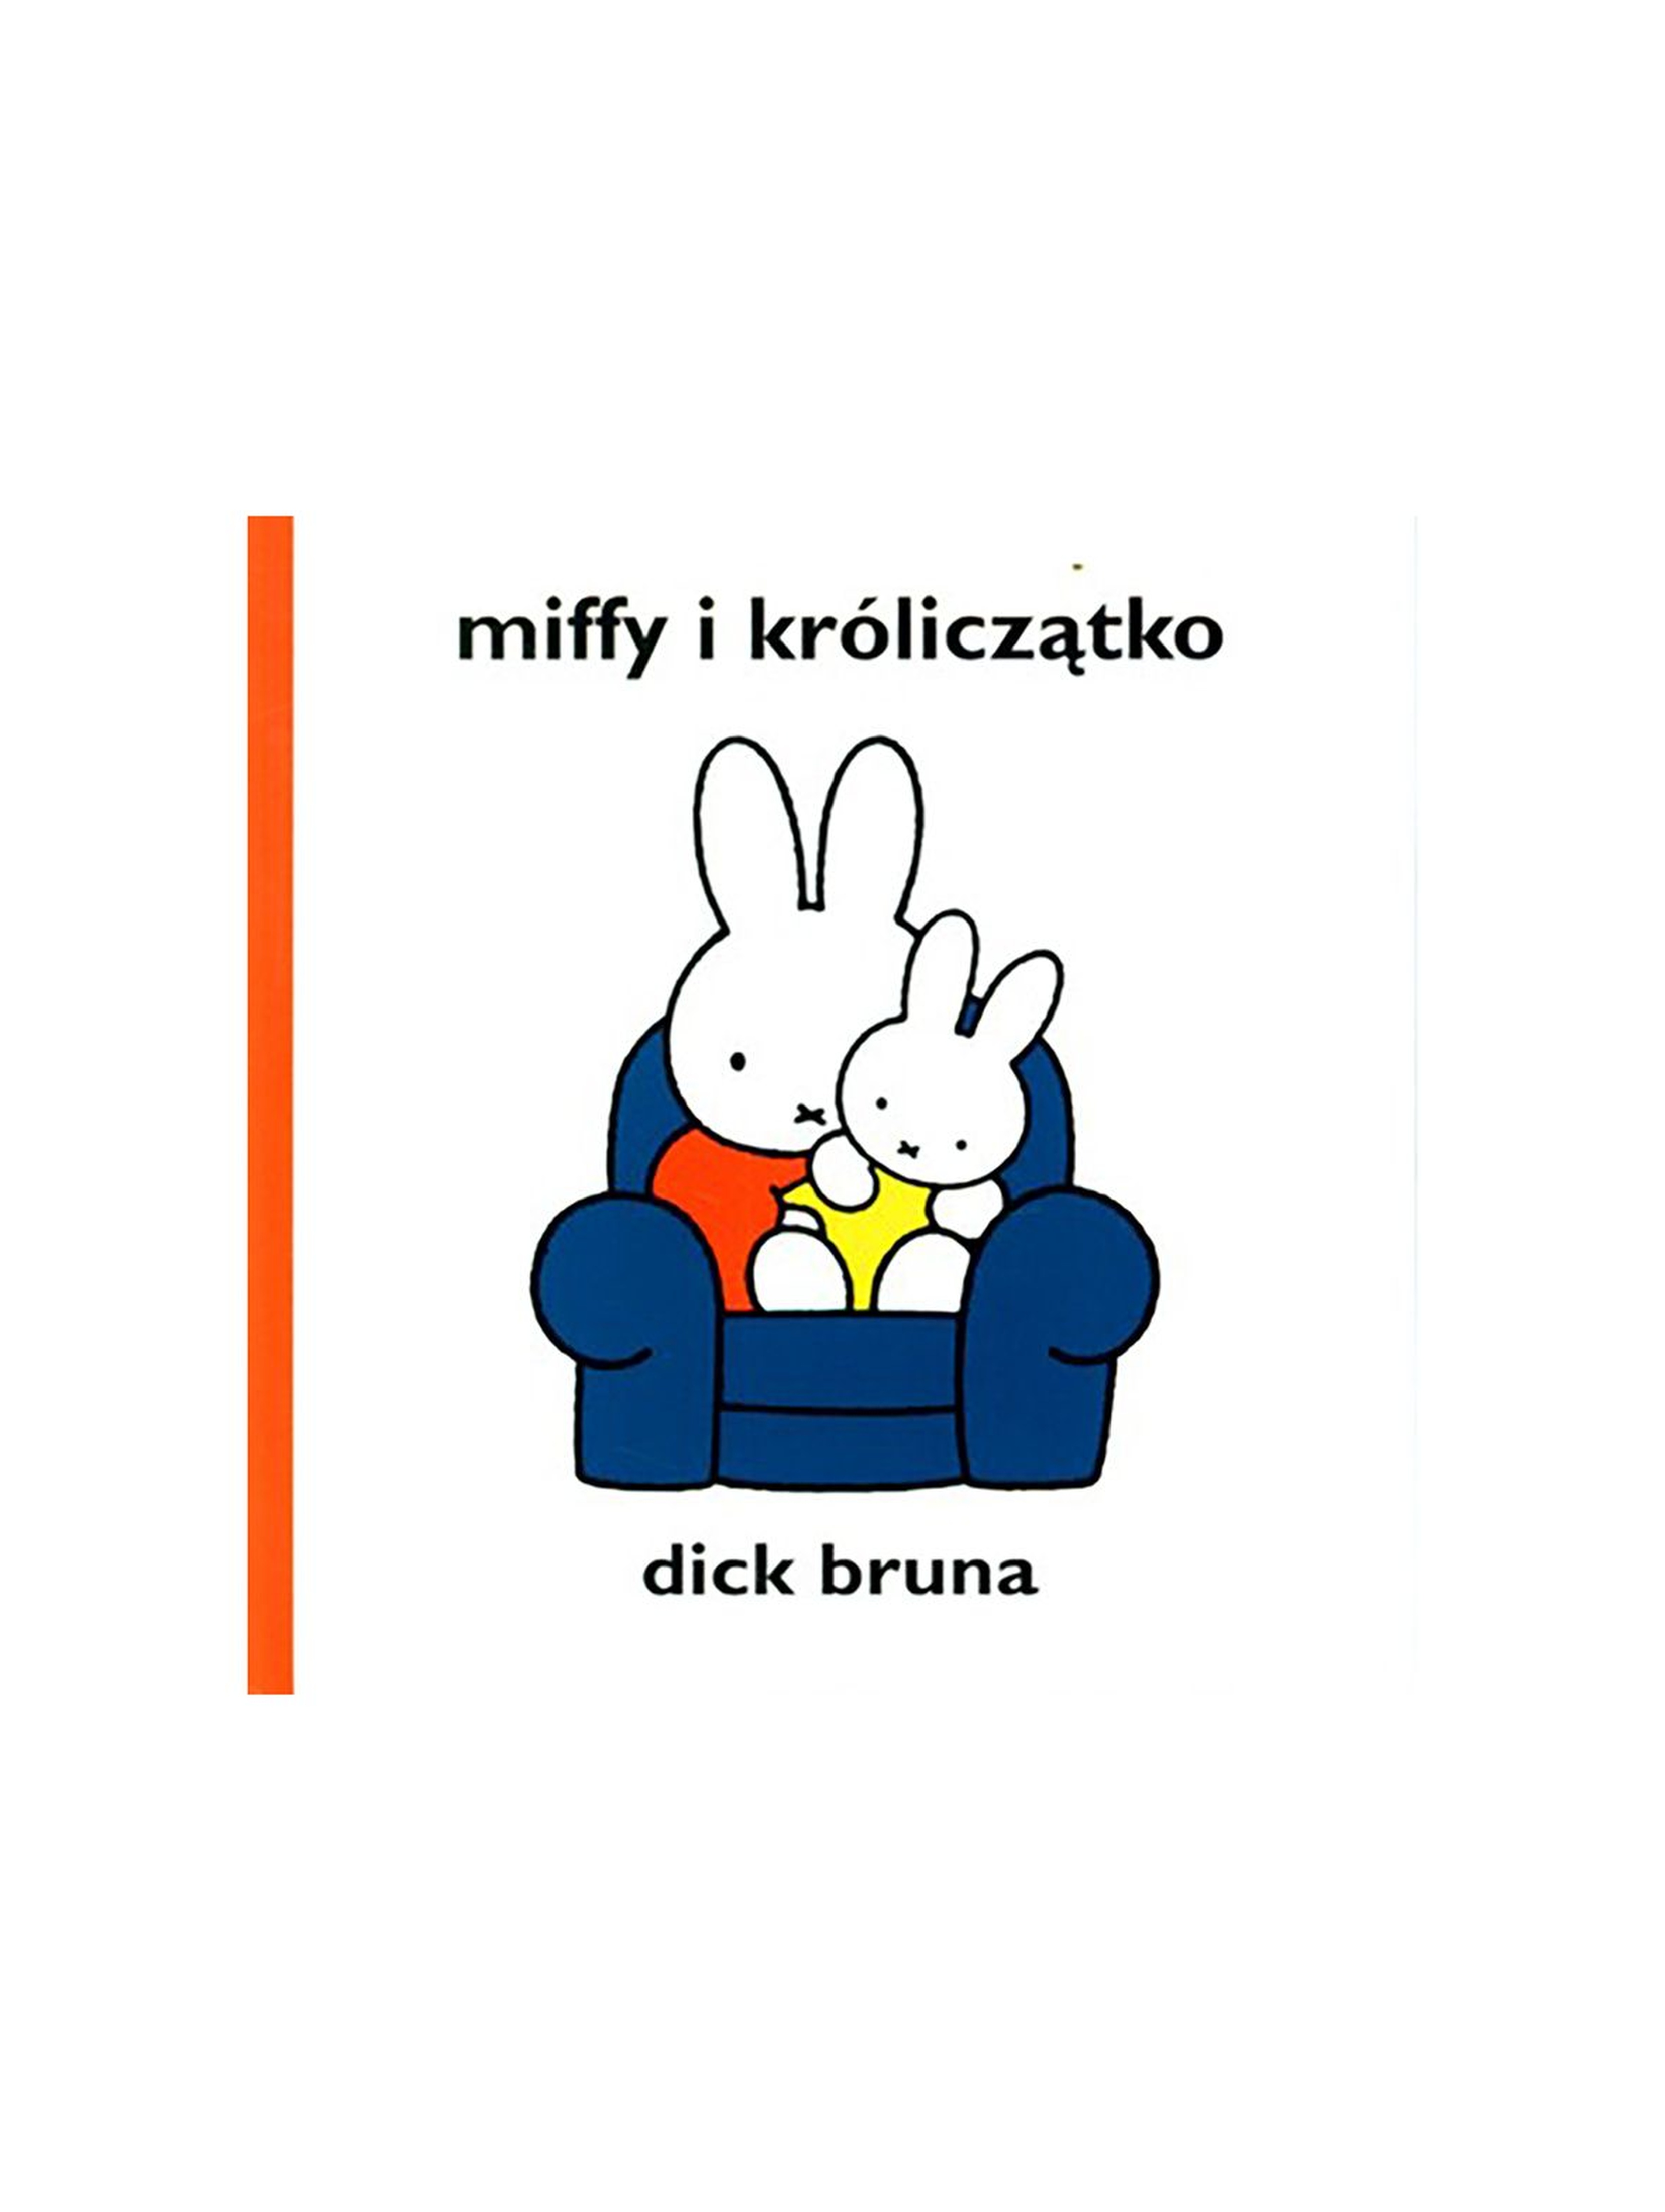 Miffy i króliczątko - książeczka